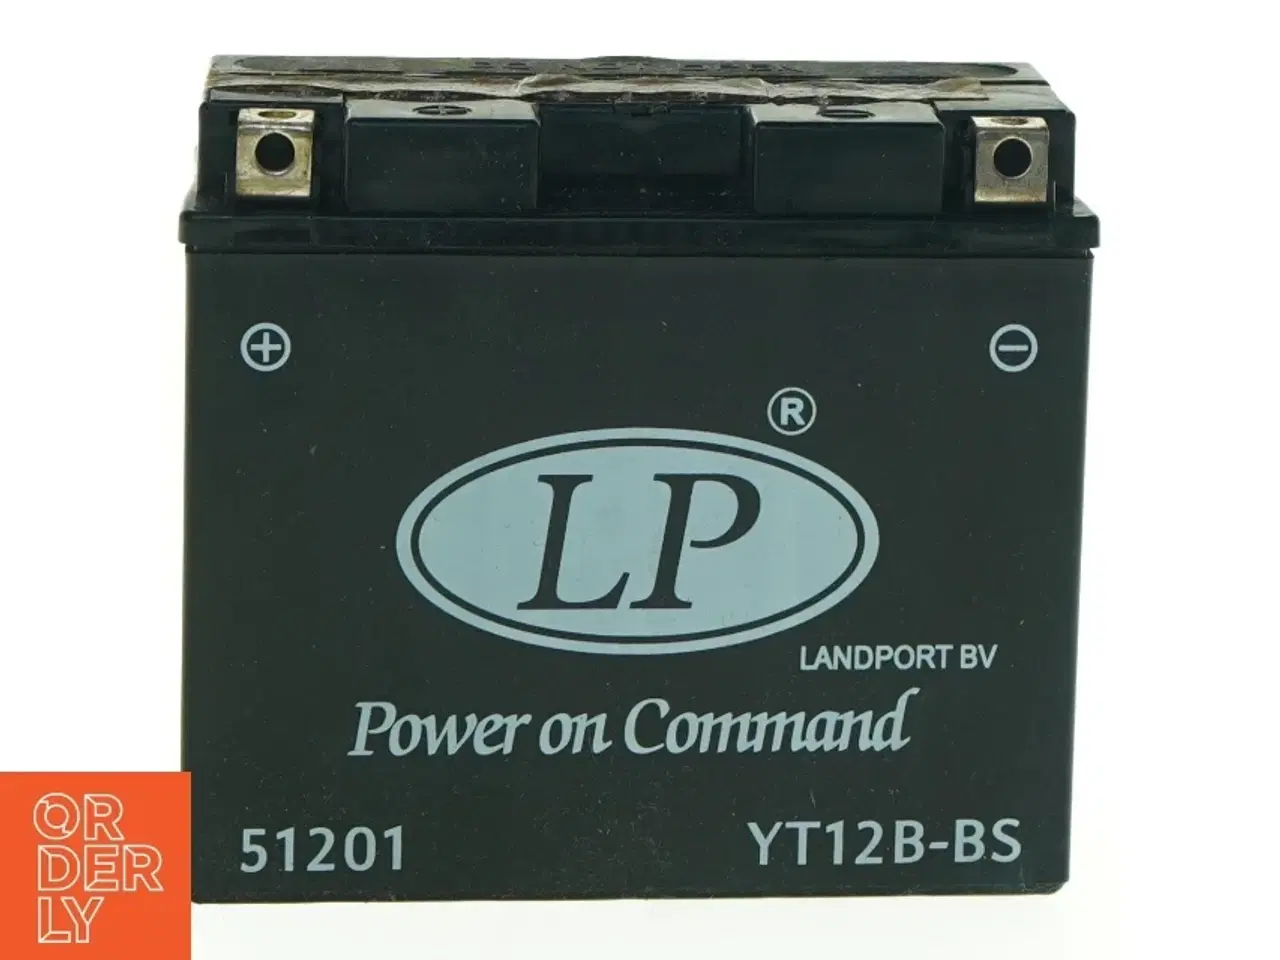 Billede 1 - Motorcykelbatteri LP YT12B-BS fra Agm (str. 15 x, 13 x 6 og en halv cm)